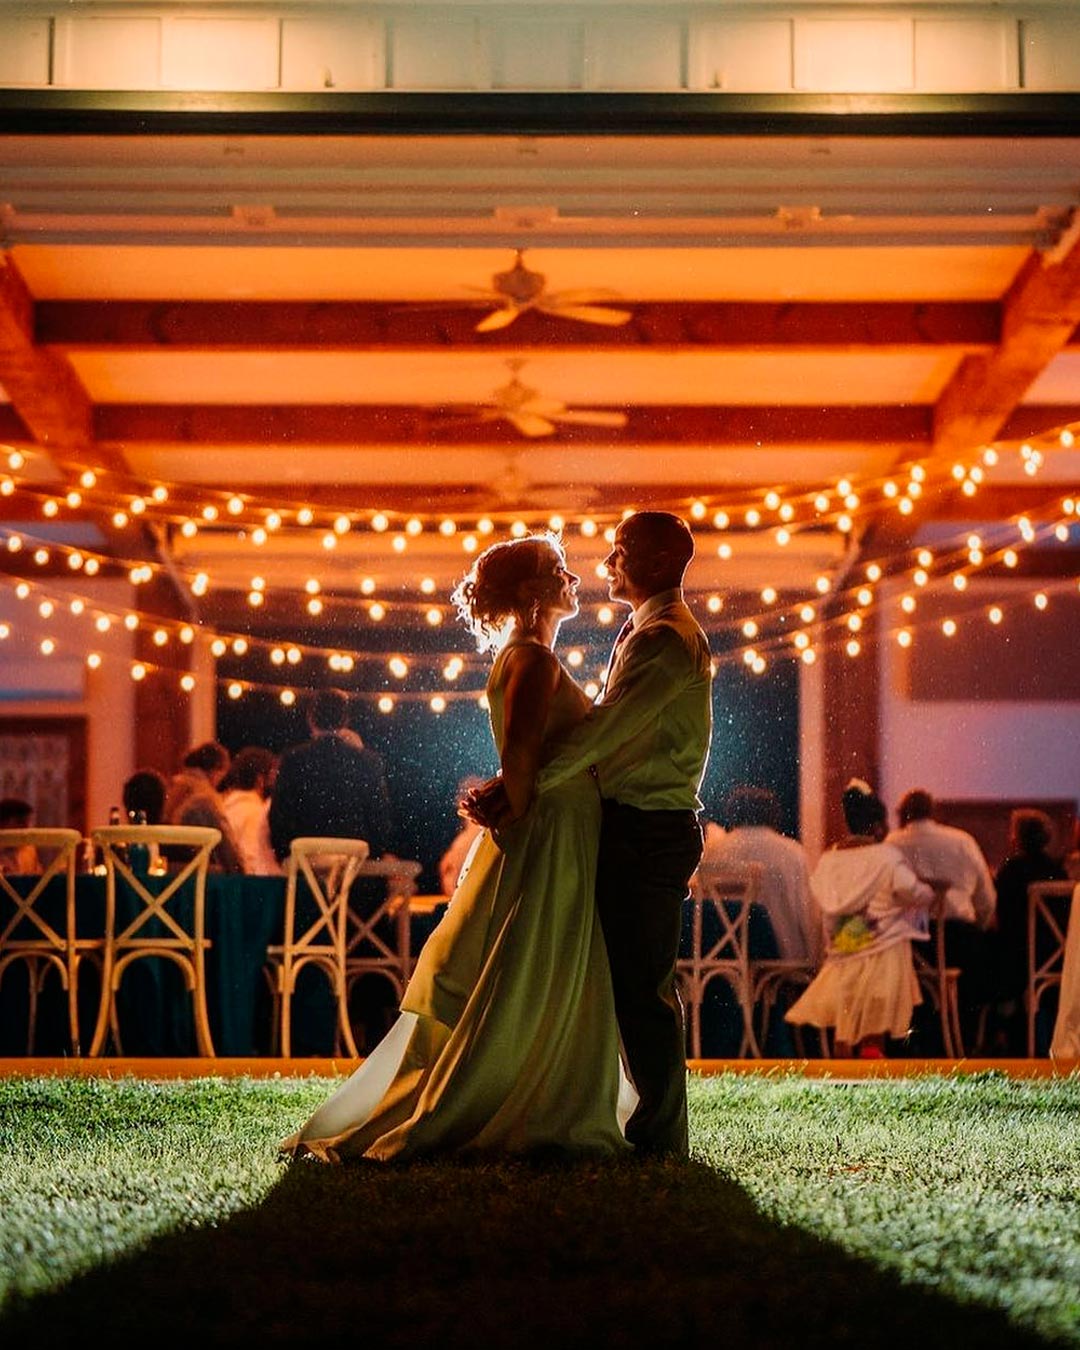 wedding venues in virginia bride groom lights barnva